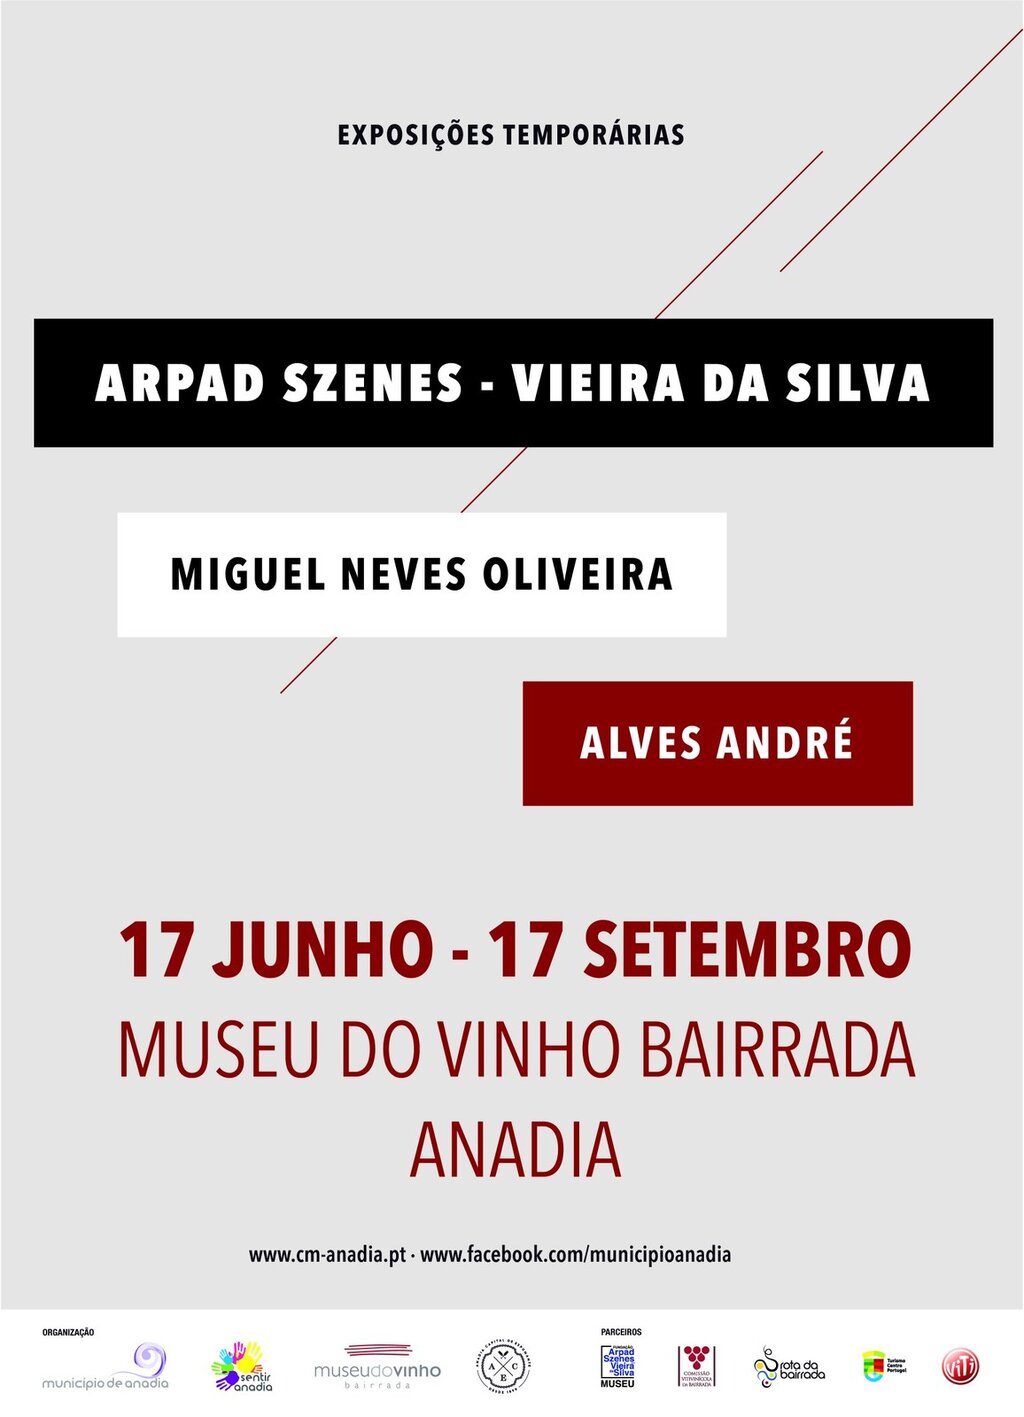 Exposições Temporárias - Arpad Szenes - Vieira da Silva / Miguel Neves Oliveira / Alves André